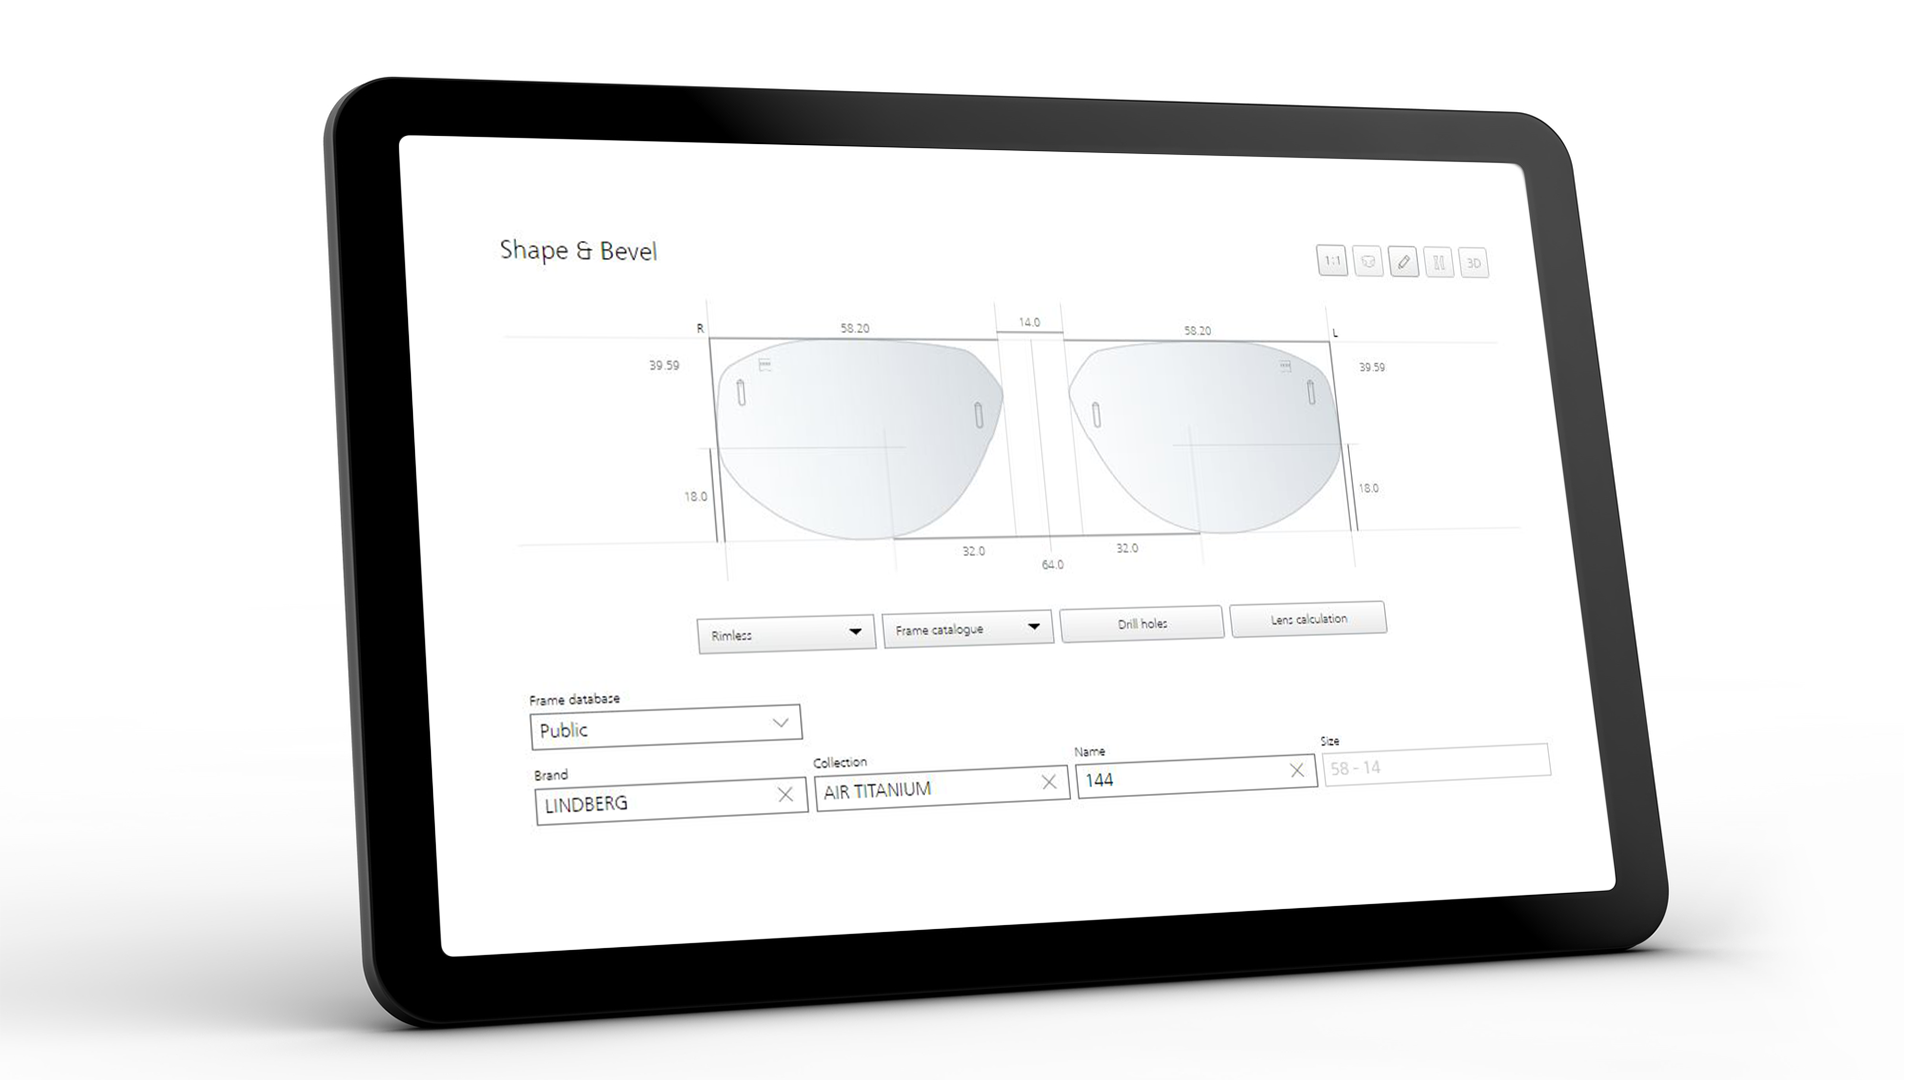 Ekran tabletu przedstawiający interfejs ZEISS VISUSTORE dla kształtu i fasety 